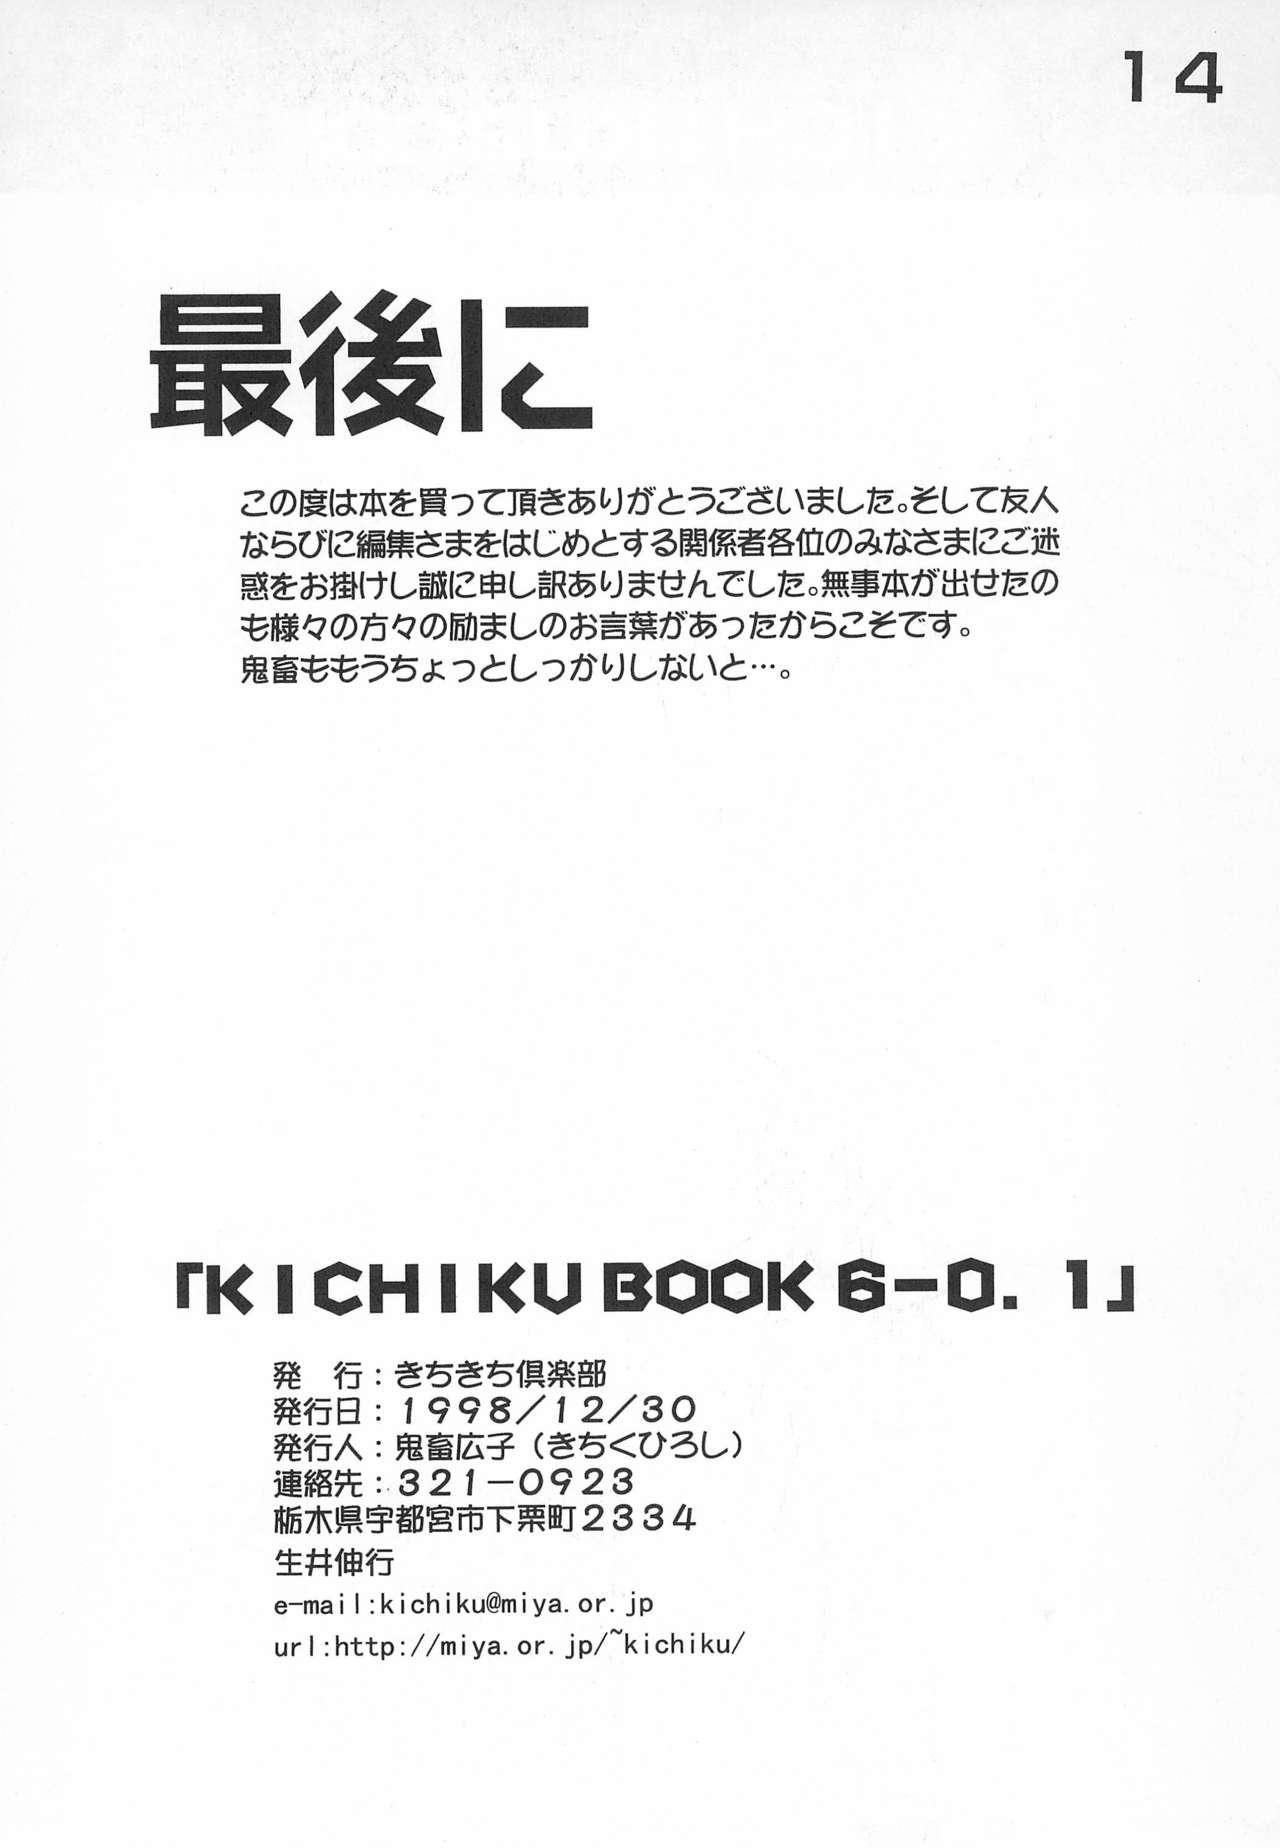 KICHIKU BOOK 6-0.1 13